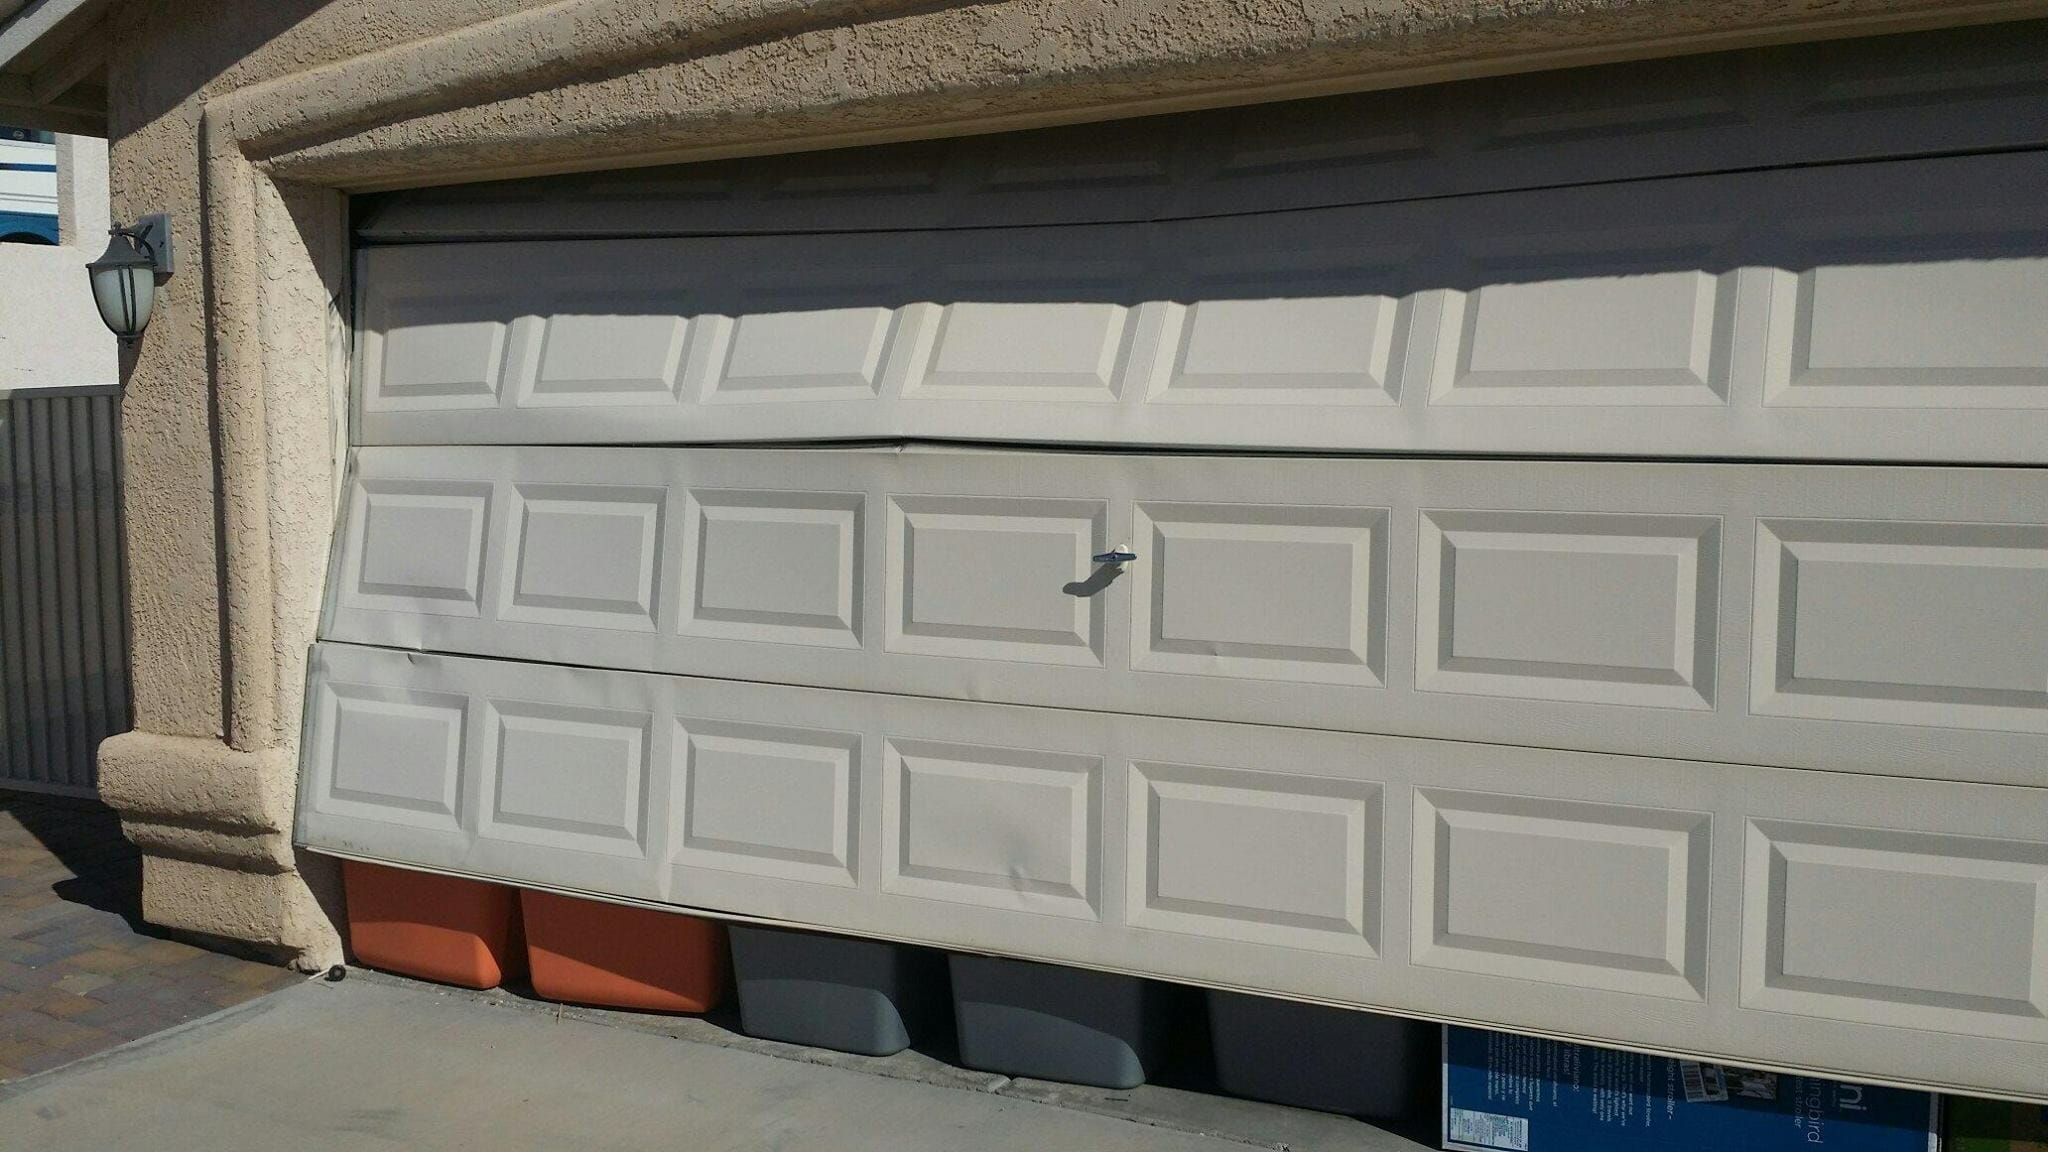 How to Fix a Dented Garage Door